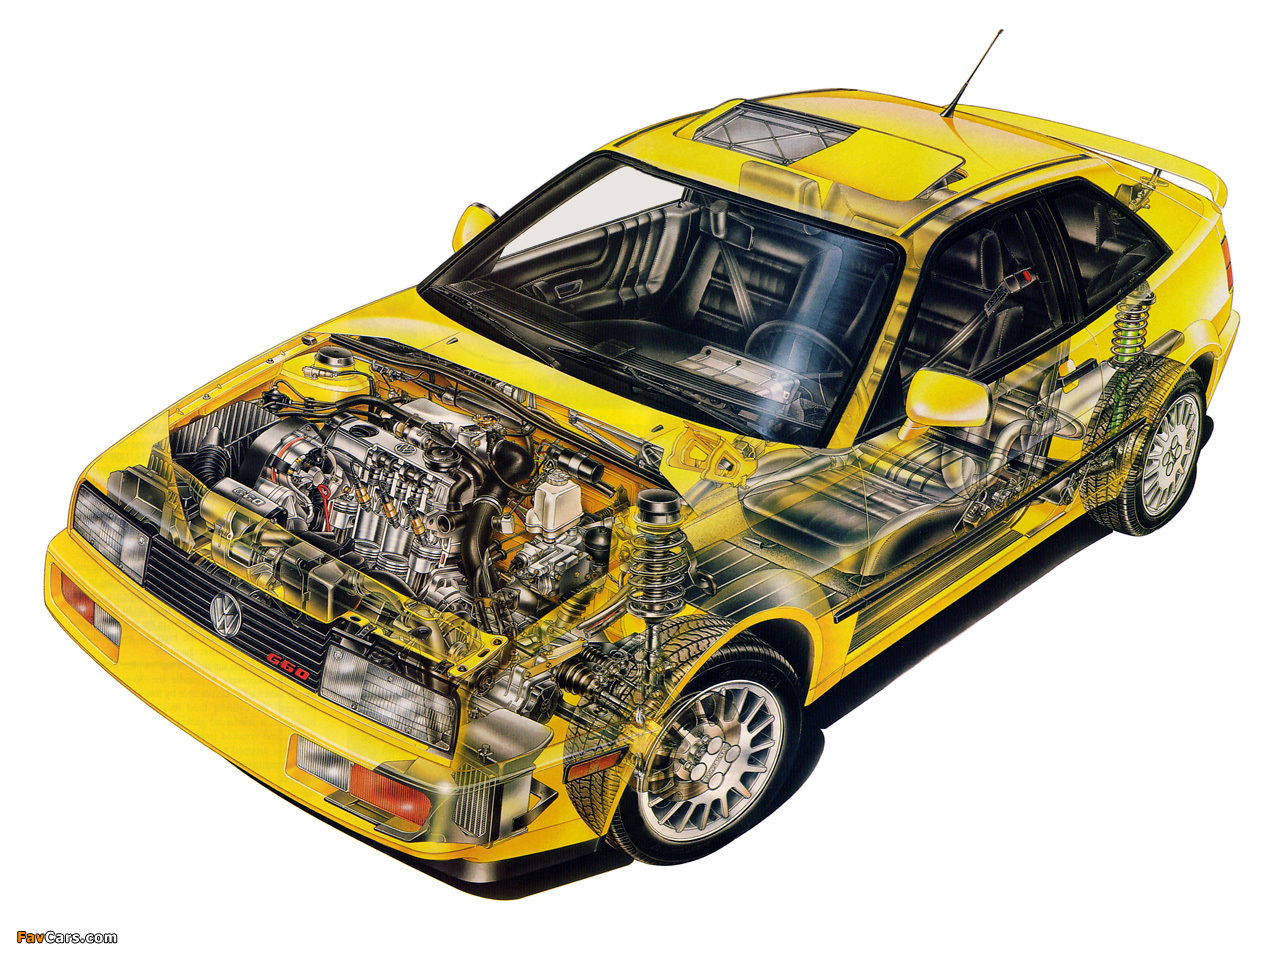 1988 Volkswagen Corrado G60